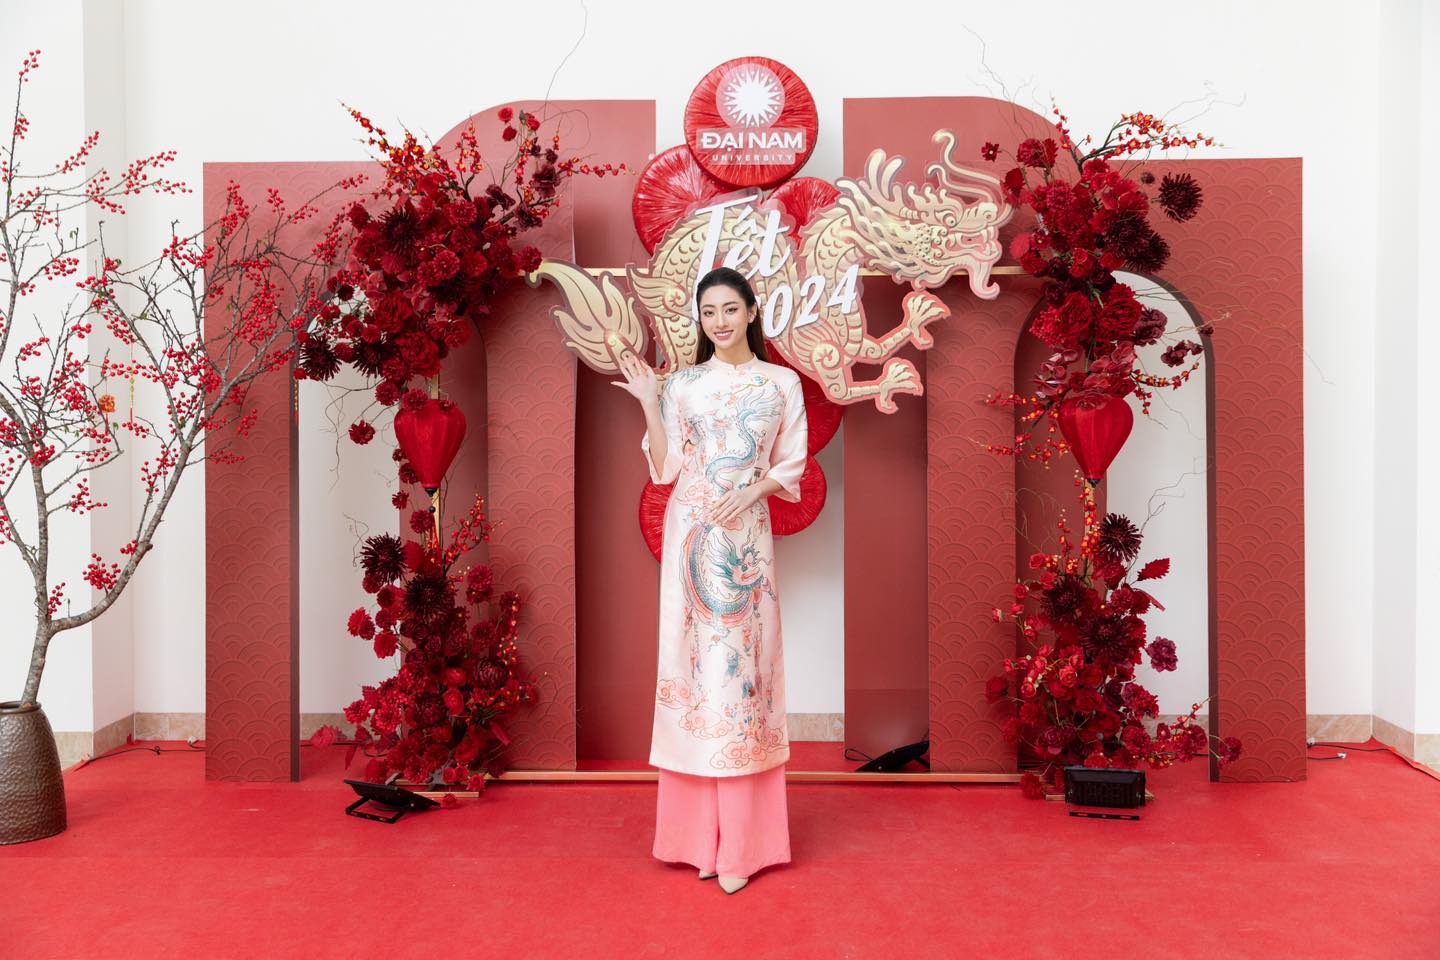 Hoa hậu Lương Thùy Linh cùng thầy trò ĐH Đại Nam trải nghiệm Tết xưa, tôn vinh giá trị văn hoá truyền thống - Ảnh 1.